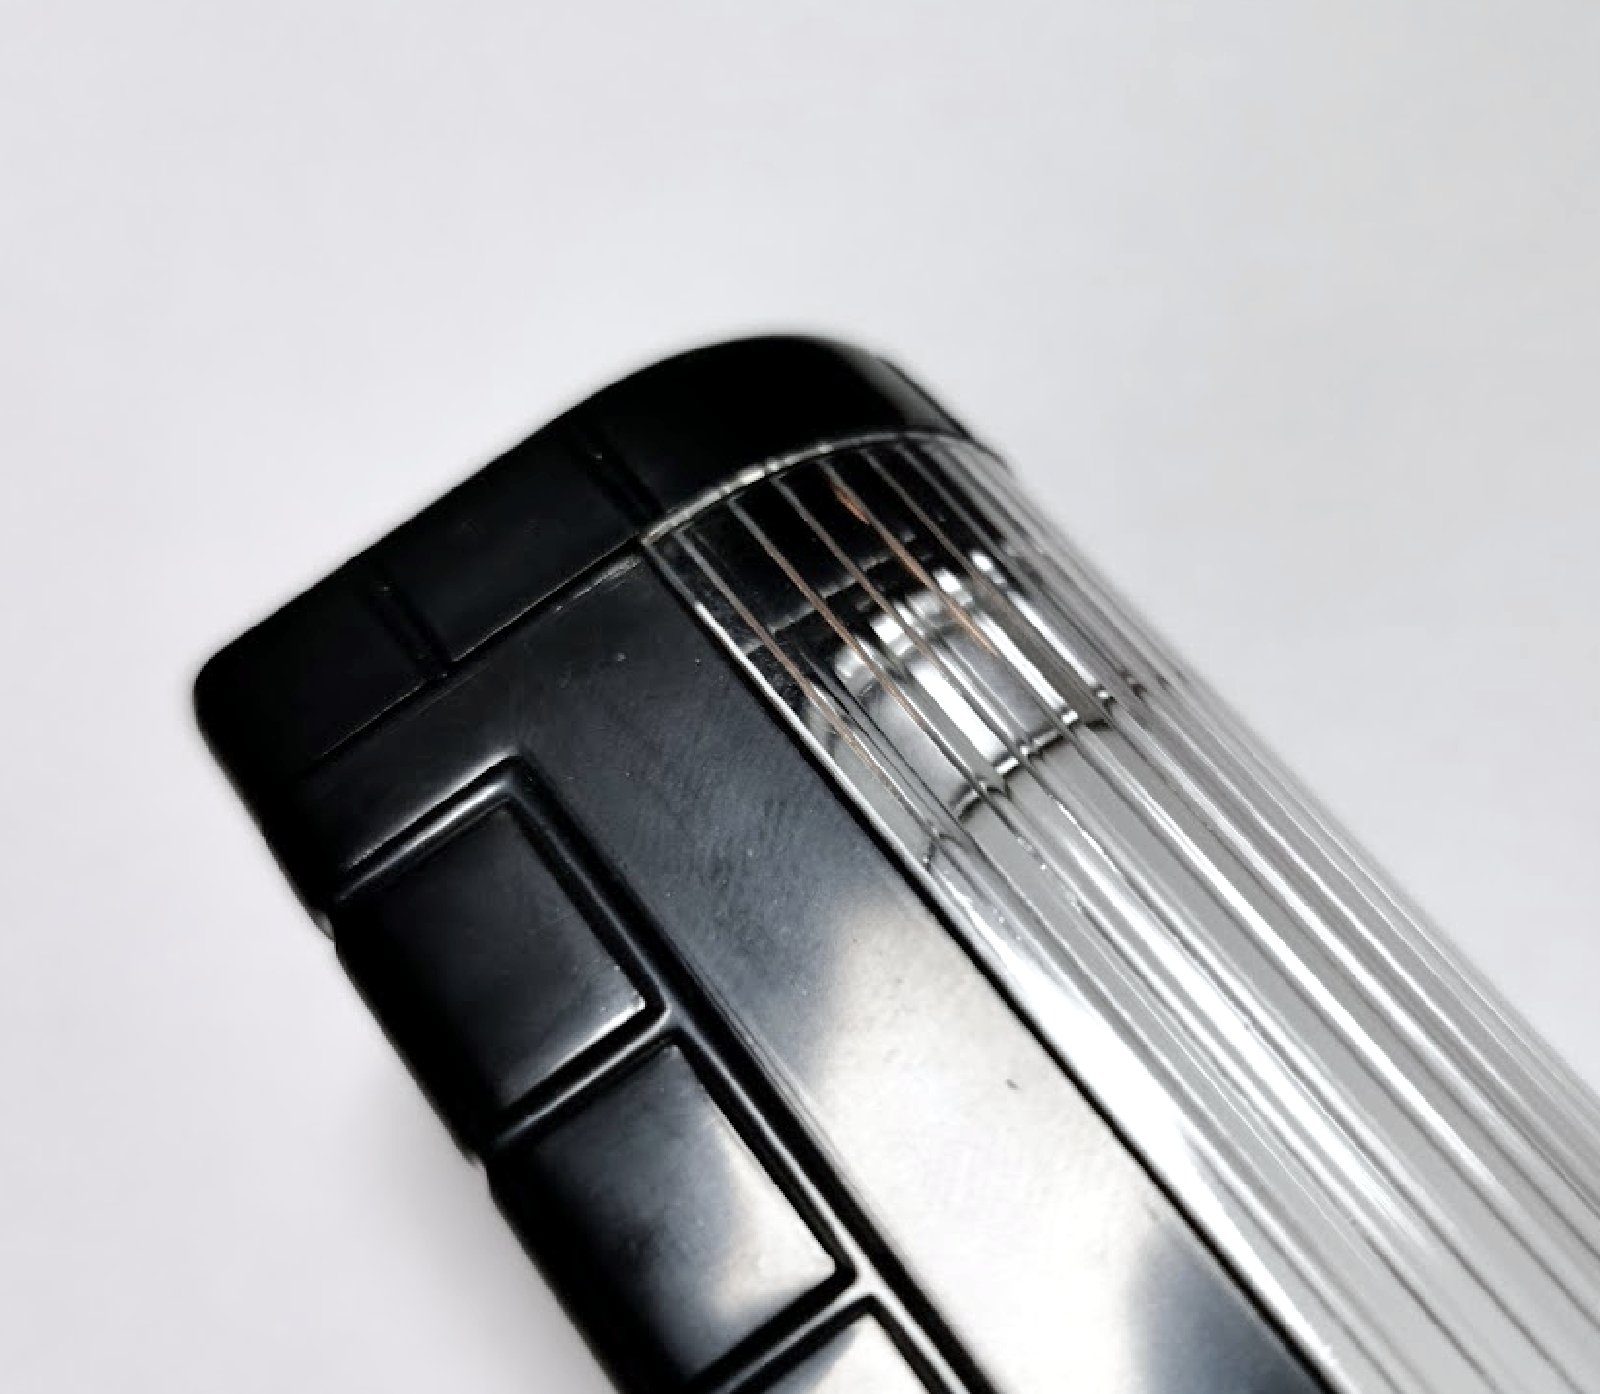 KFZ Zusatz HR Leuchte Leselampe Autocomfort Taschenlampe Ambiente Leuchte Leselicht Lampe Auto